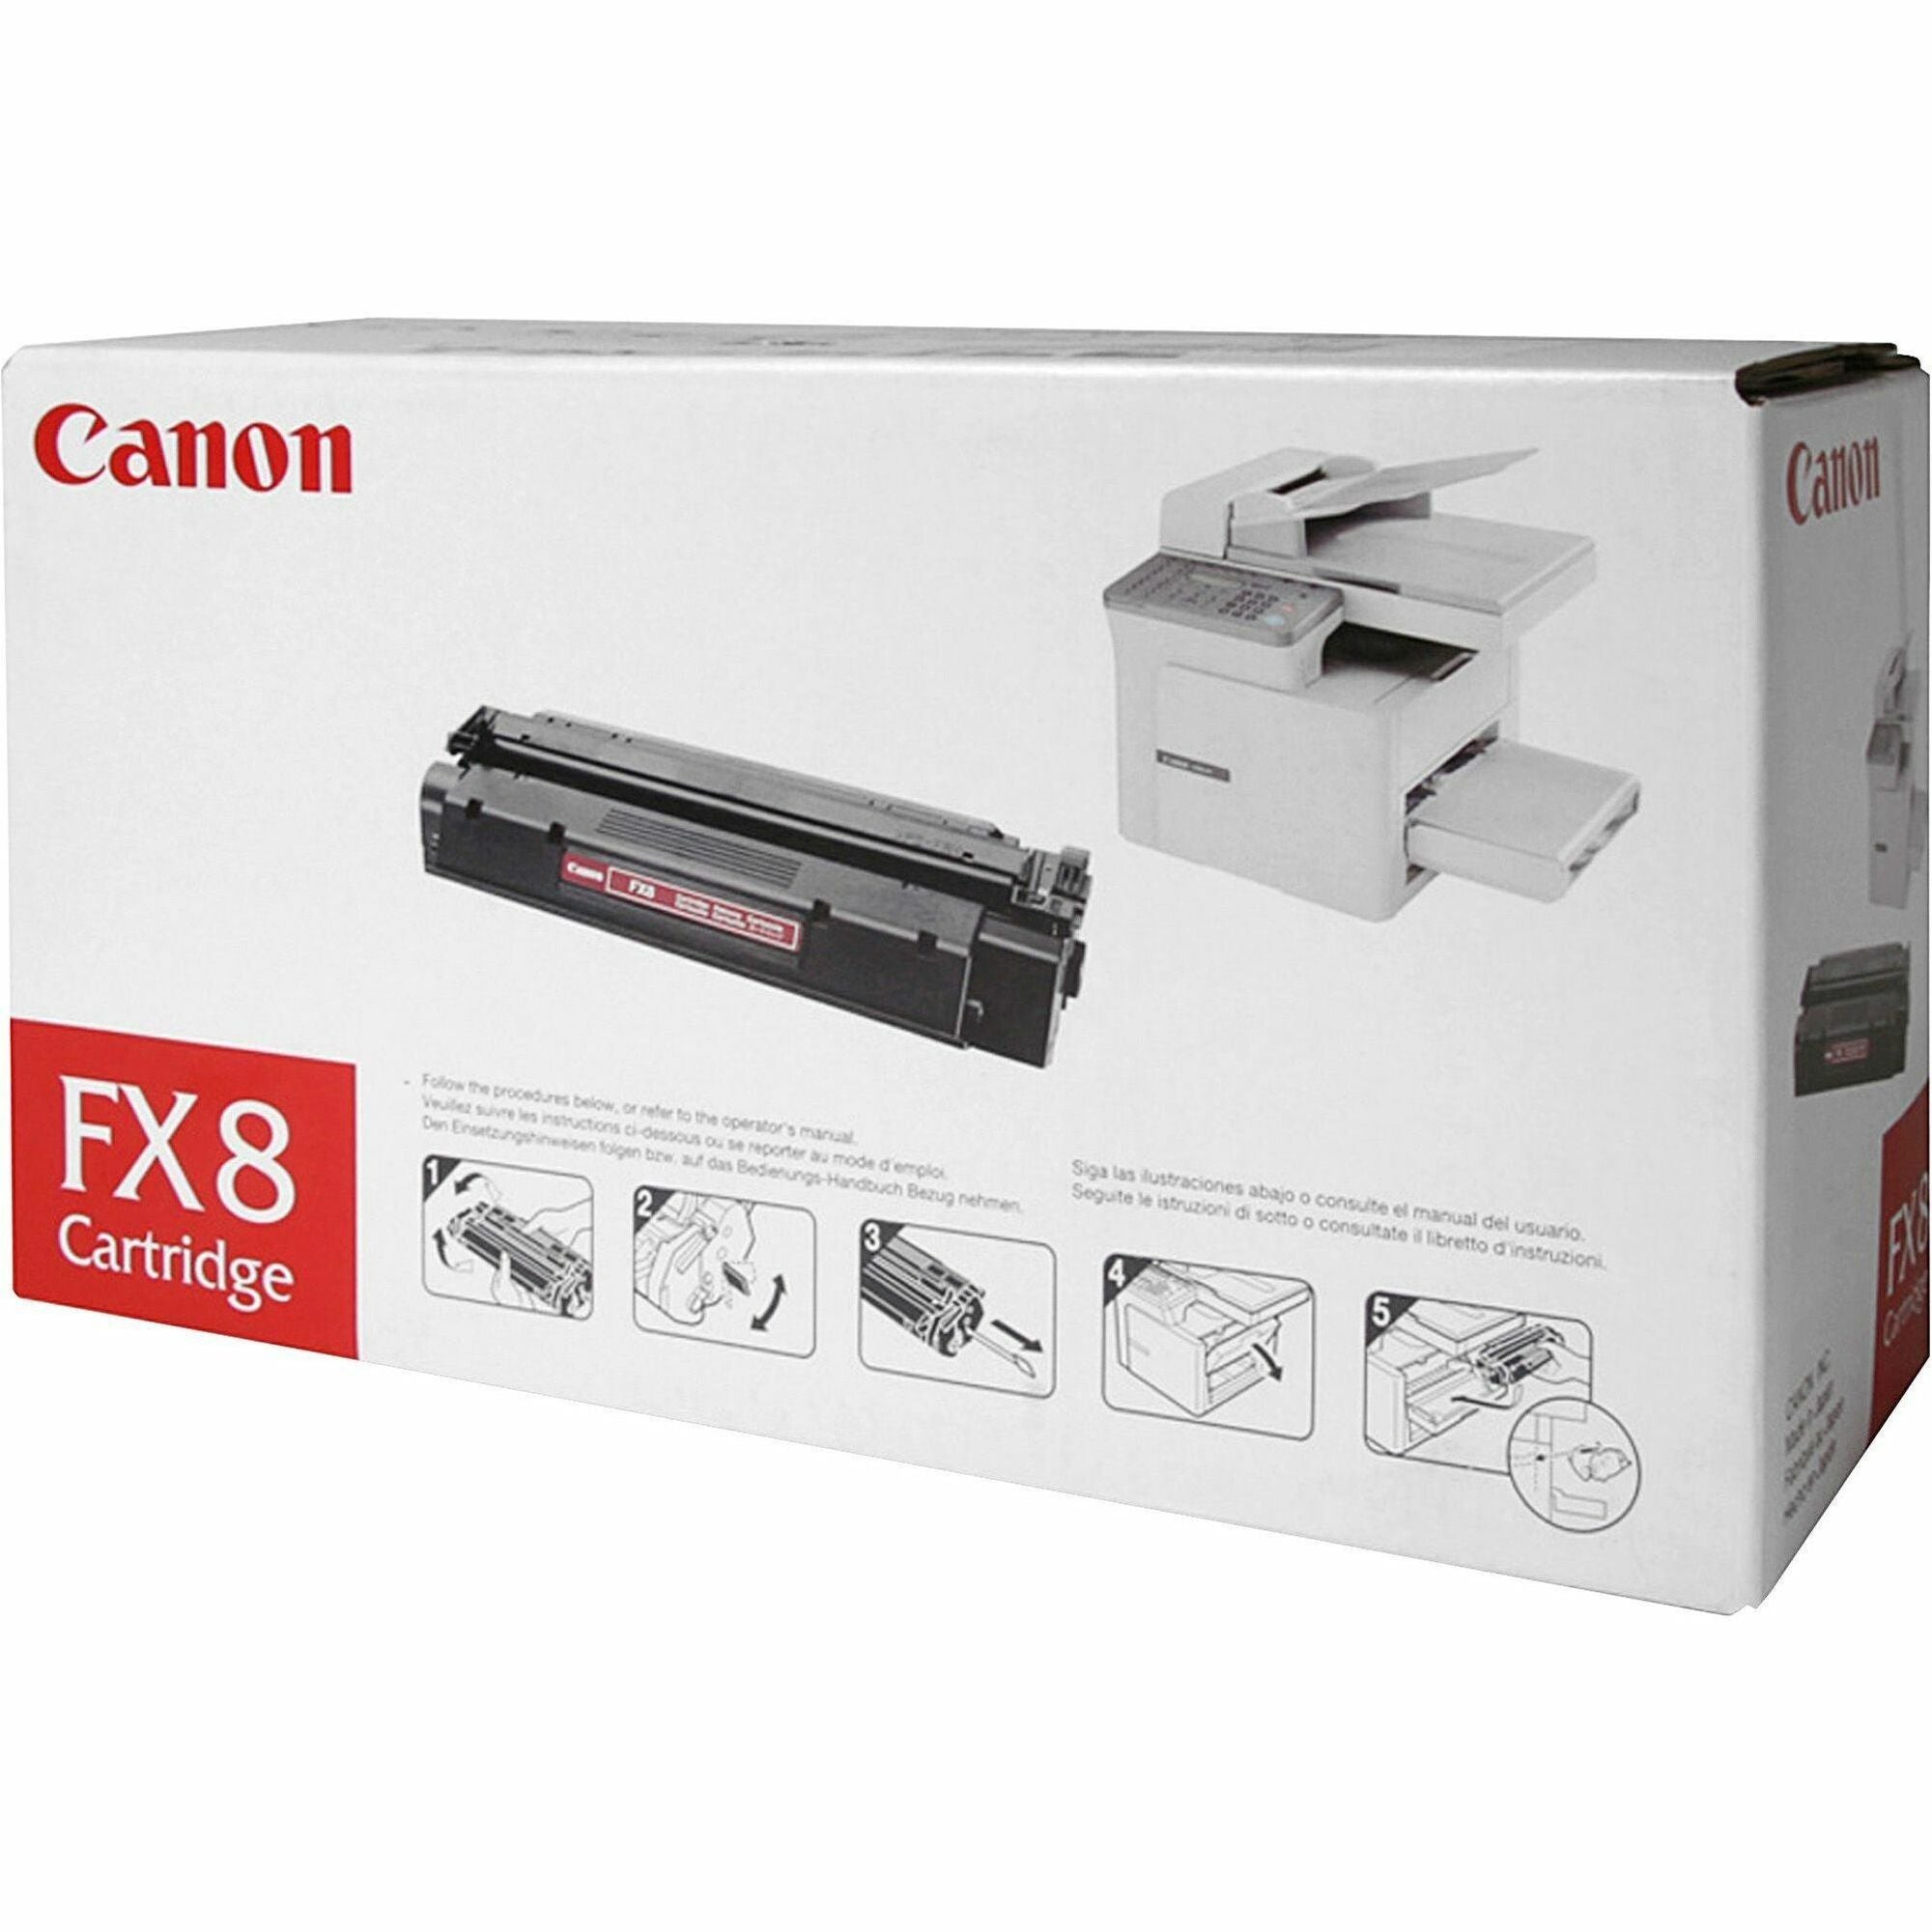 canon-fx8-original-toner-cartridge-laser-3500-pages-black-1-each_cnmfx8 - 1